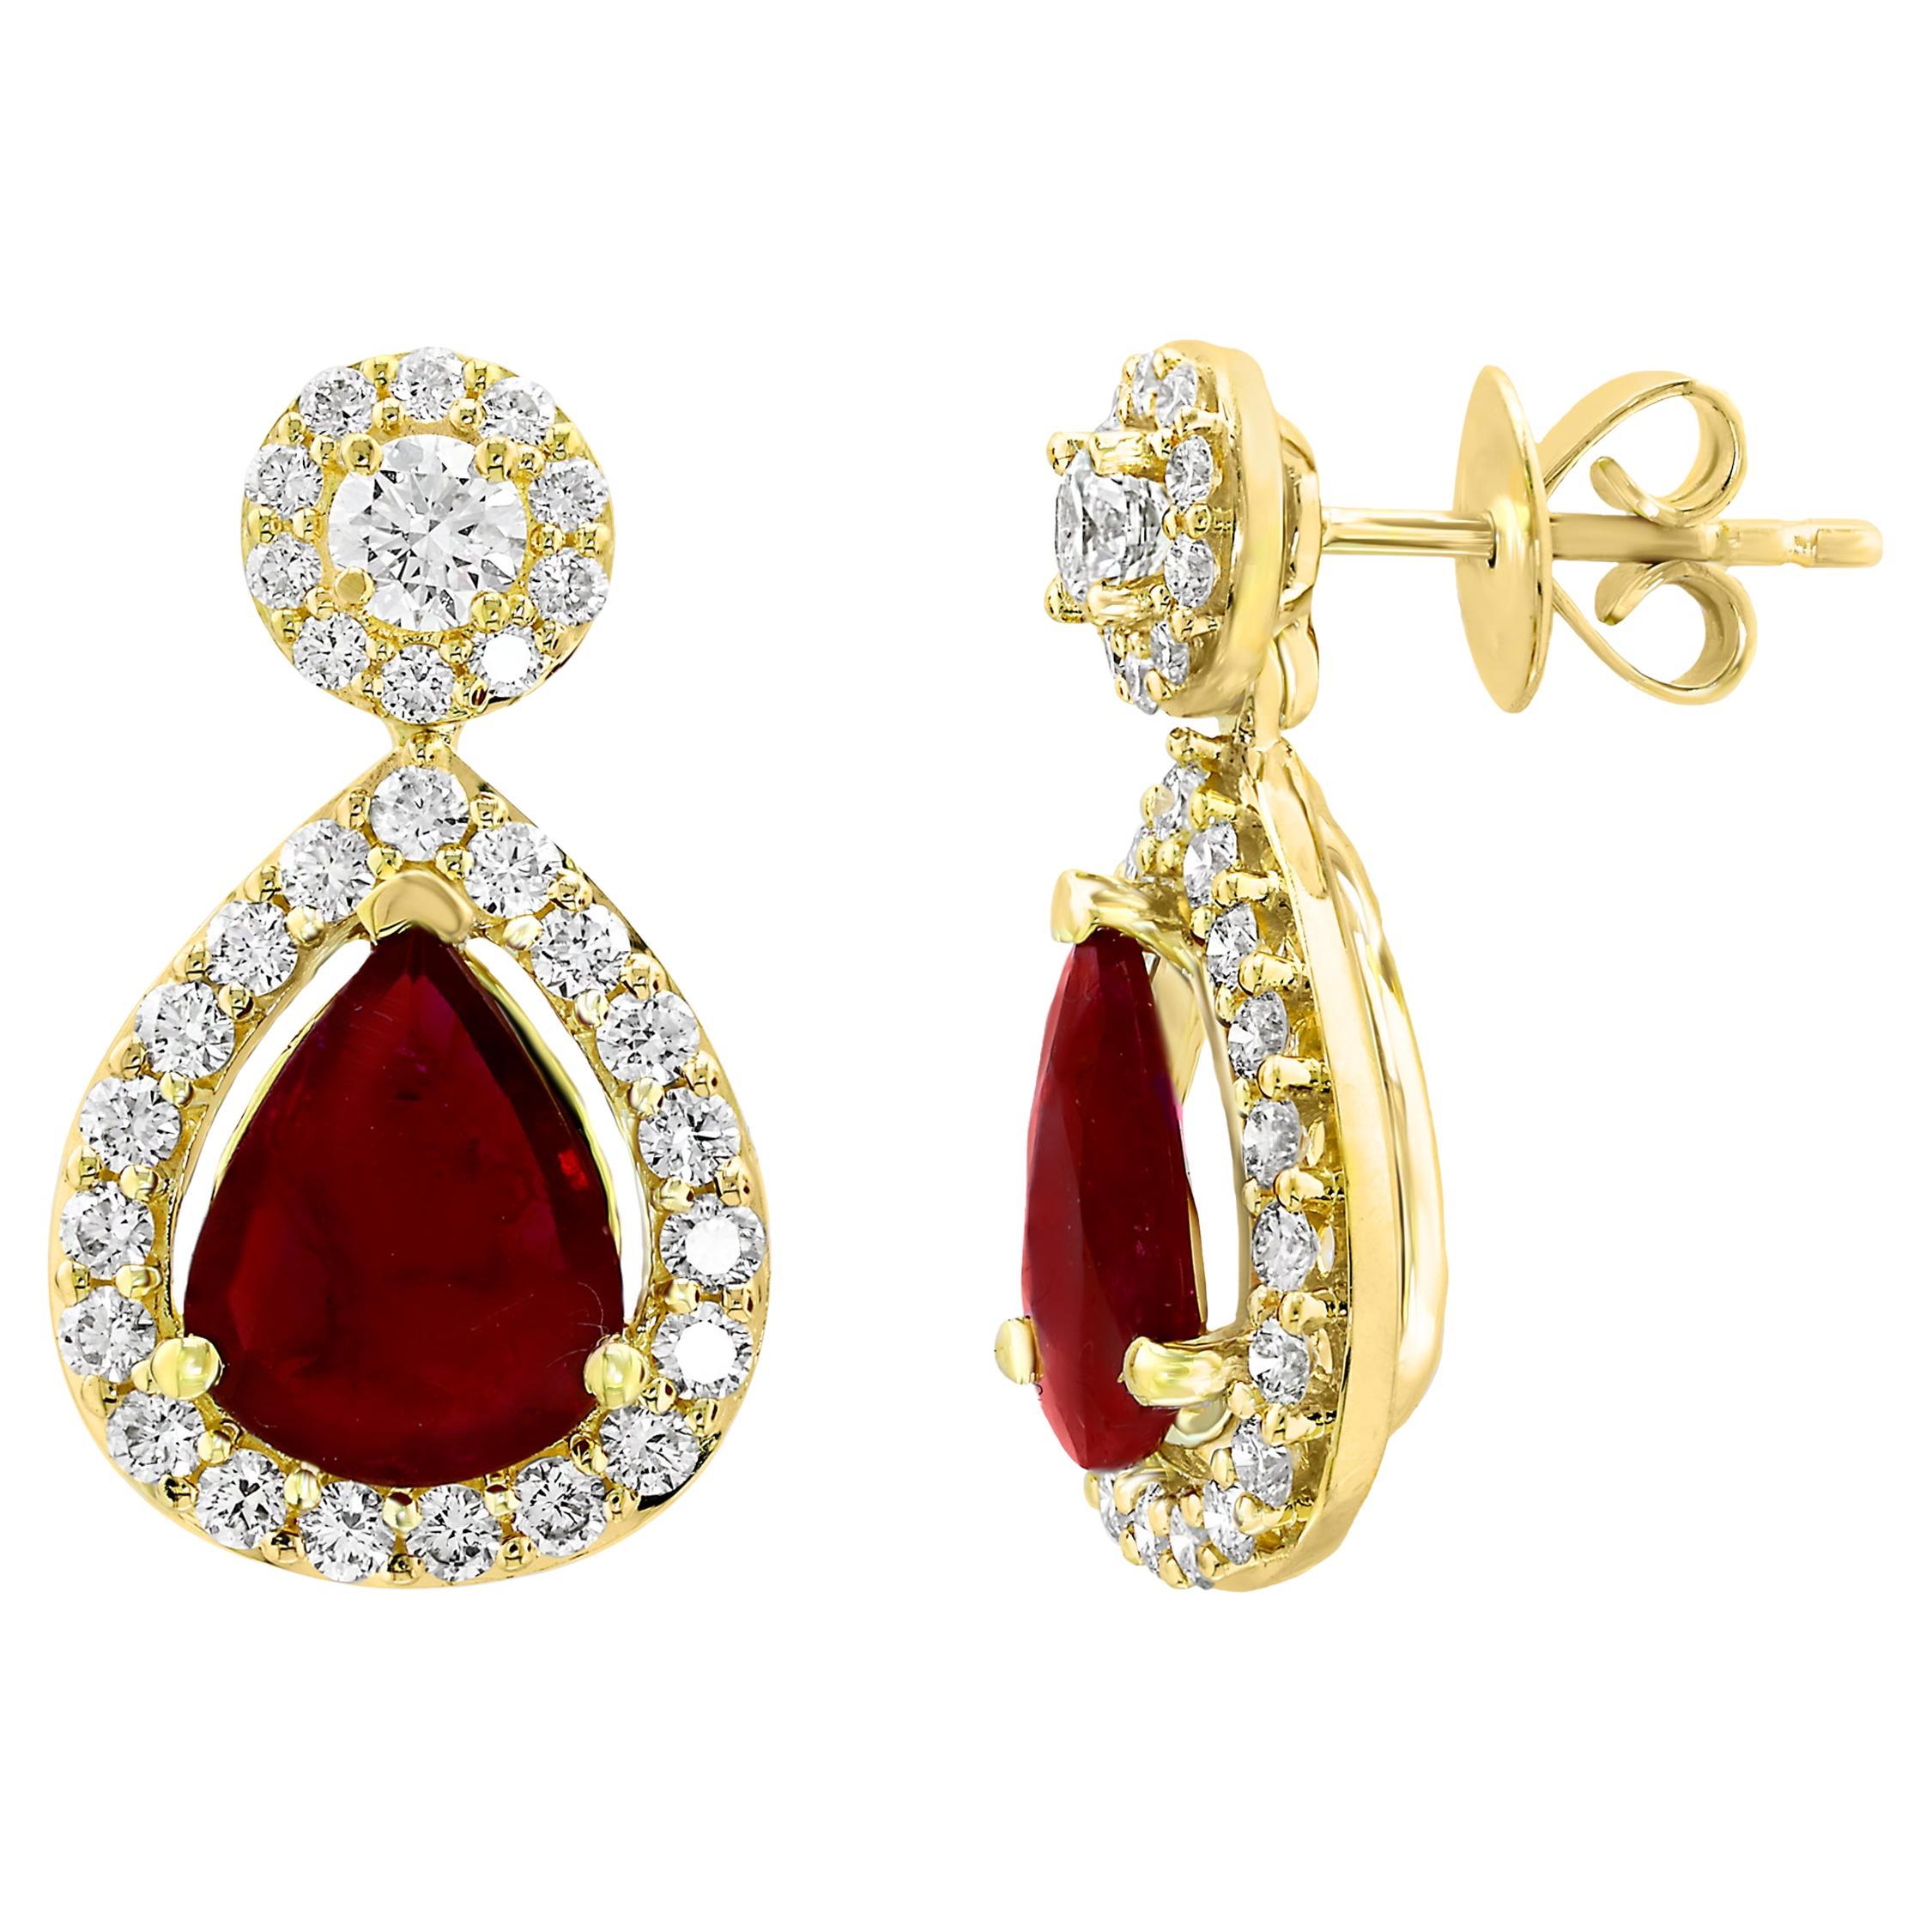 3.56 Carat of Pear Shape Ruby Diamond Drop Earrings in 18K Yellow Gold